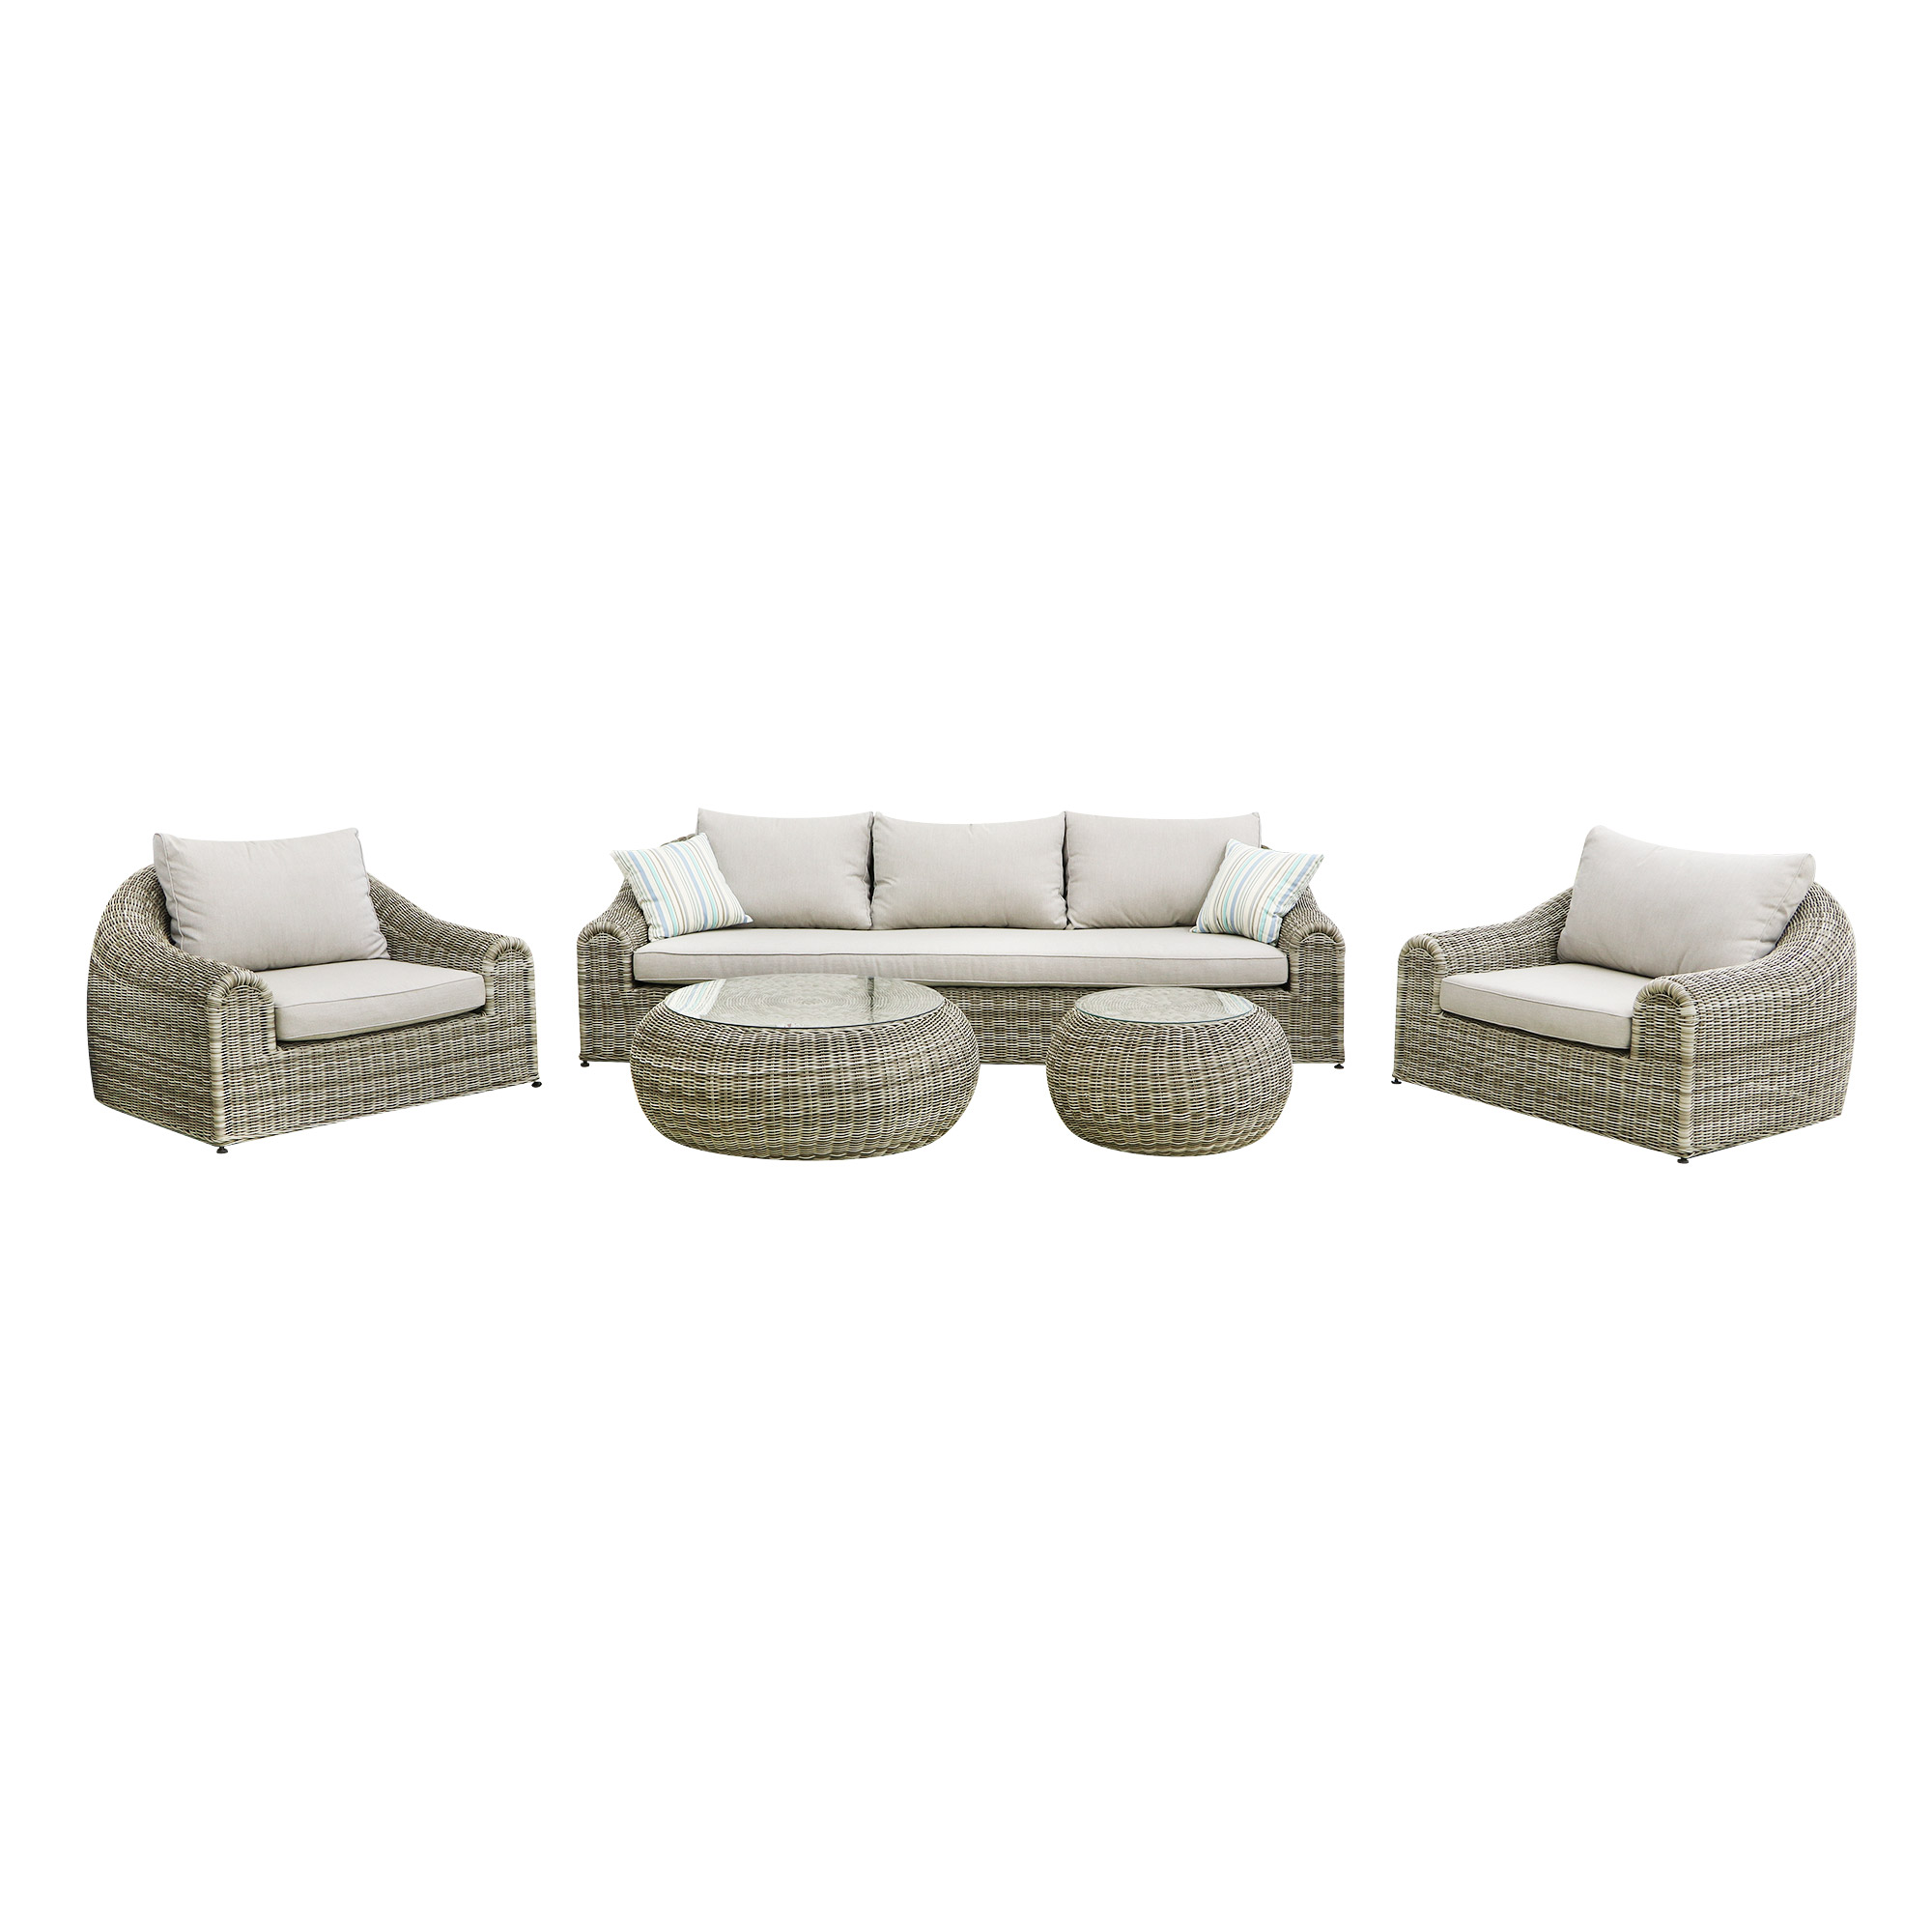 Комплект мебели Yuhang: 2 кресла+диван+2 стола, размер 265х106х75